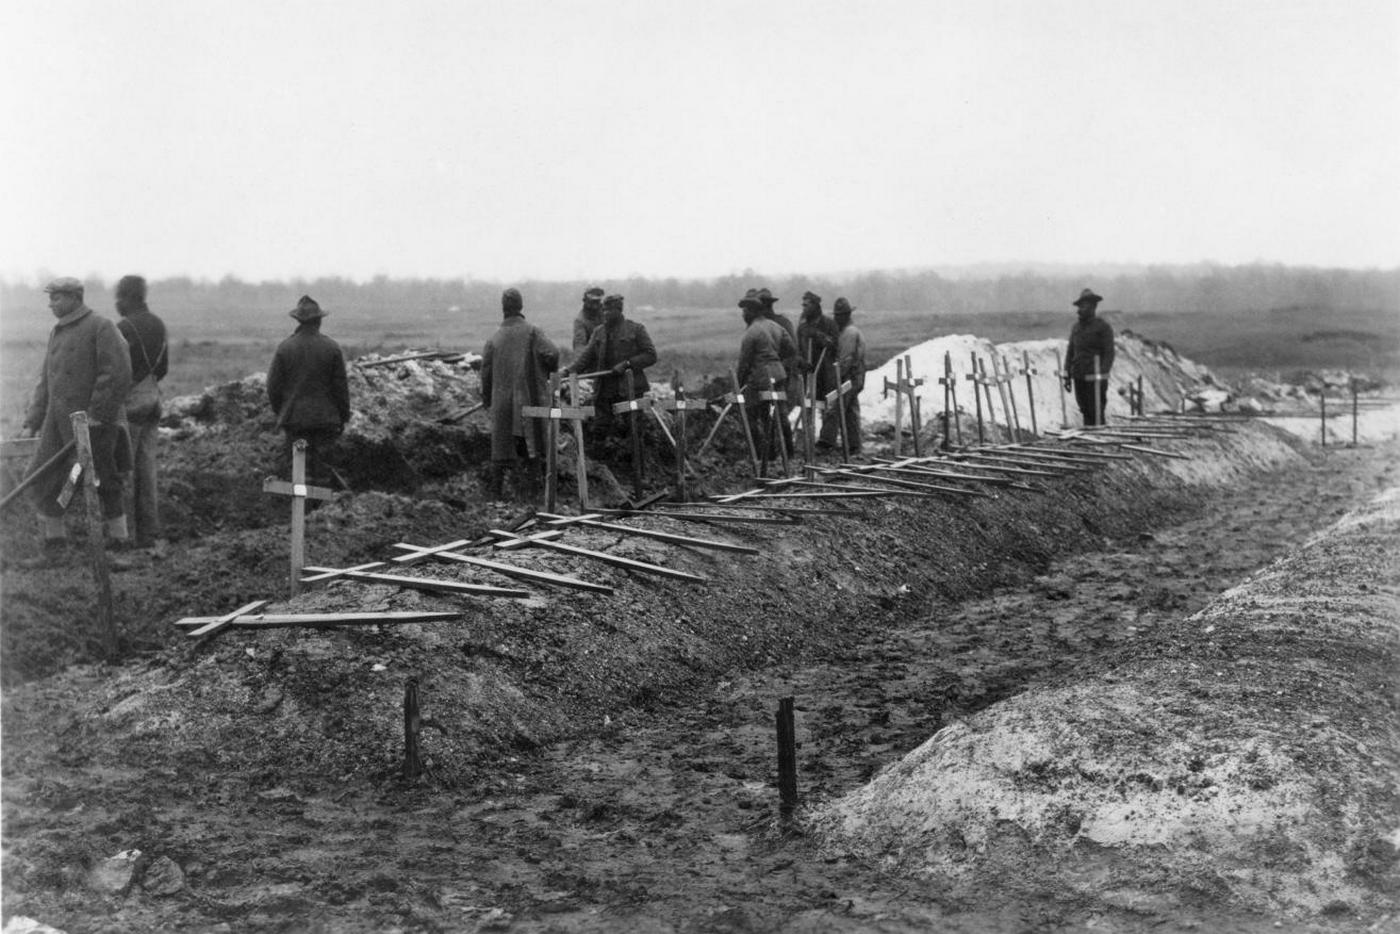 Anatomie d’une folie (3) : La Première Guerre mondiale pourrait-elle être évitée ?